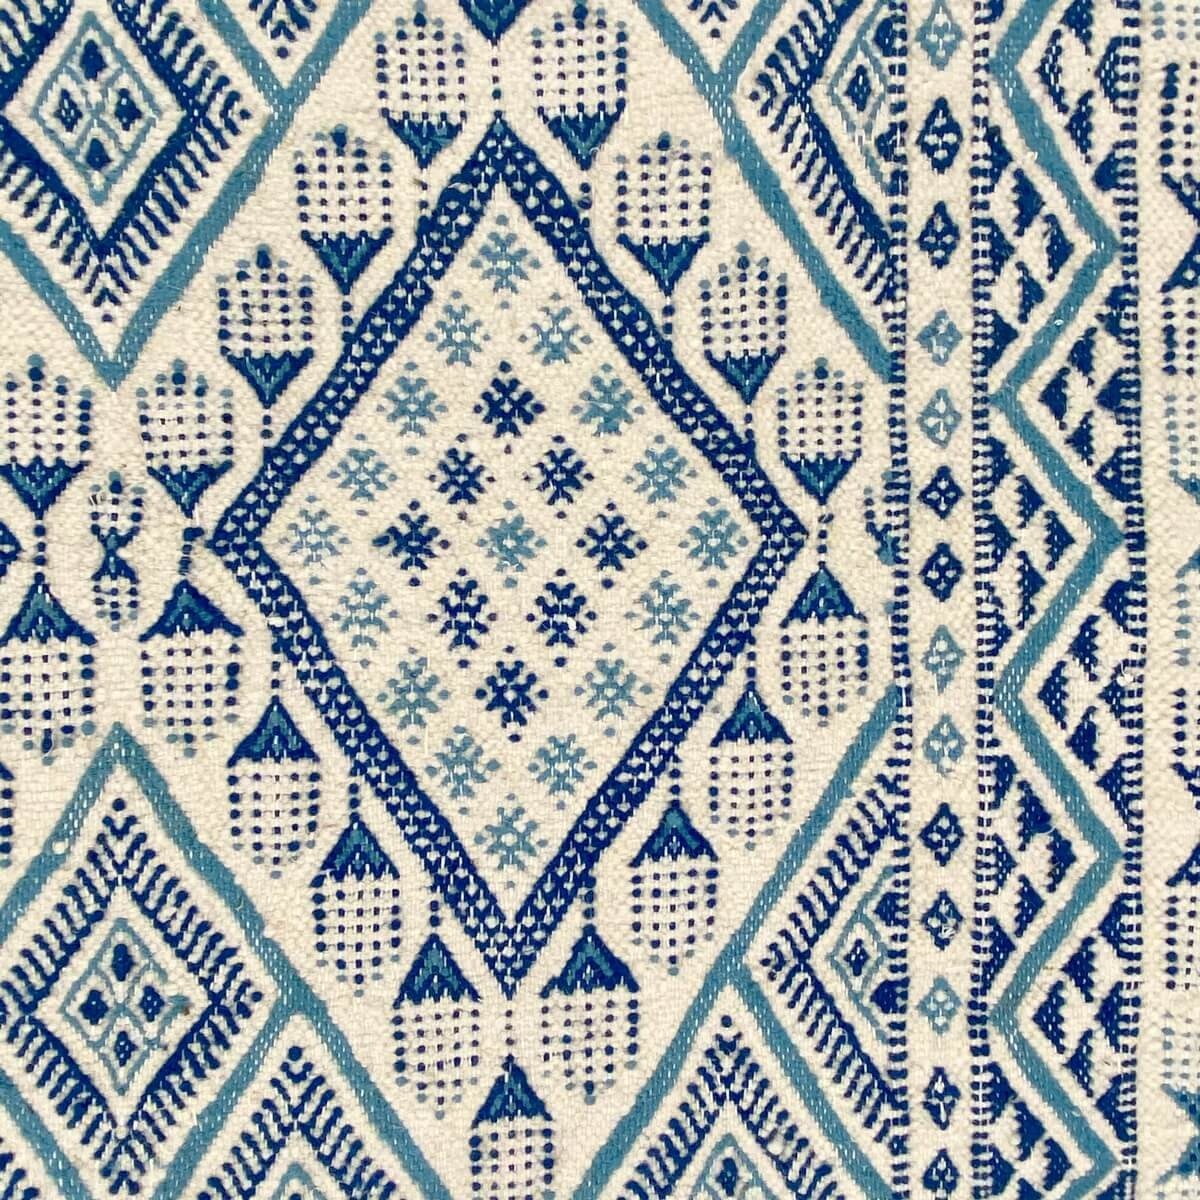 Berber tapijt Tapijt Margoum Ghassa 125x195 Blauw/Wit (Handgeweven, Wol, Tunesië) Tunesisch Margoum Tapijt uit de stad Kairouan.